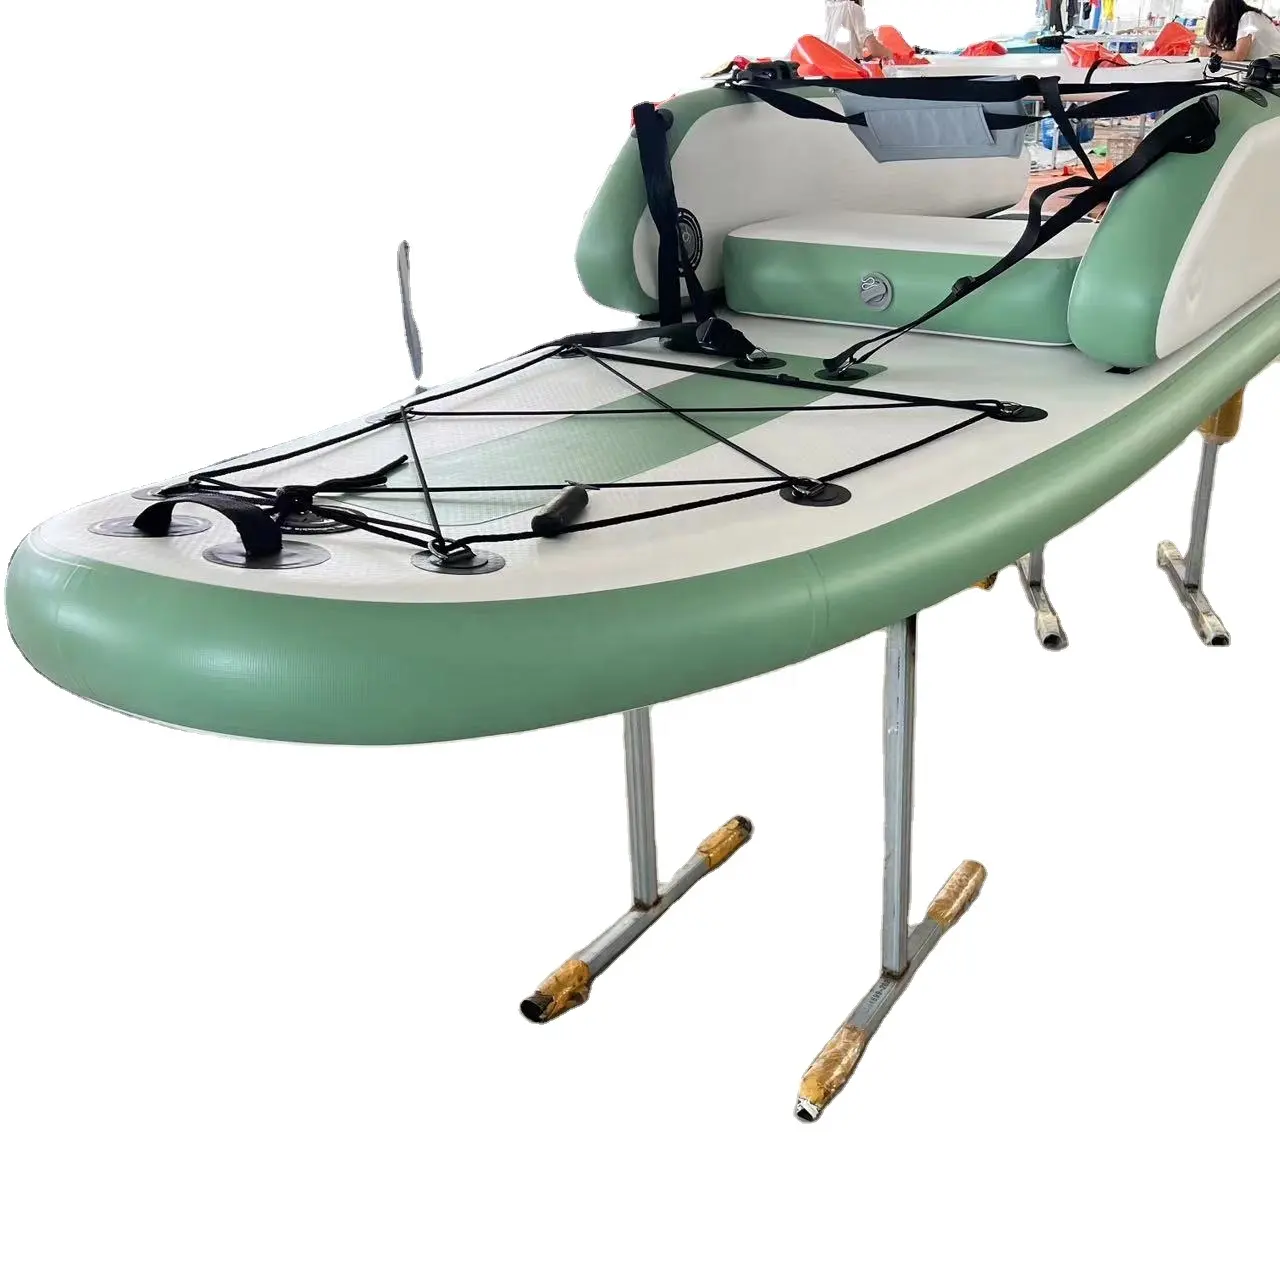 Neues Design Aufblasbares Sup Board für Fischerboot Mit Sitz